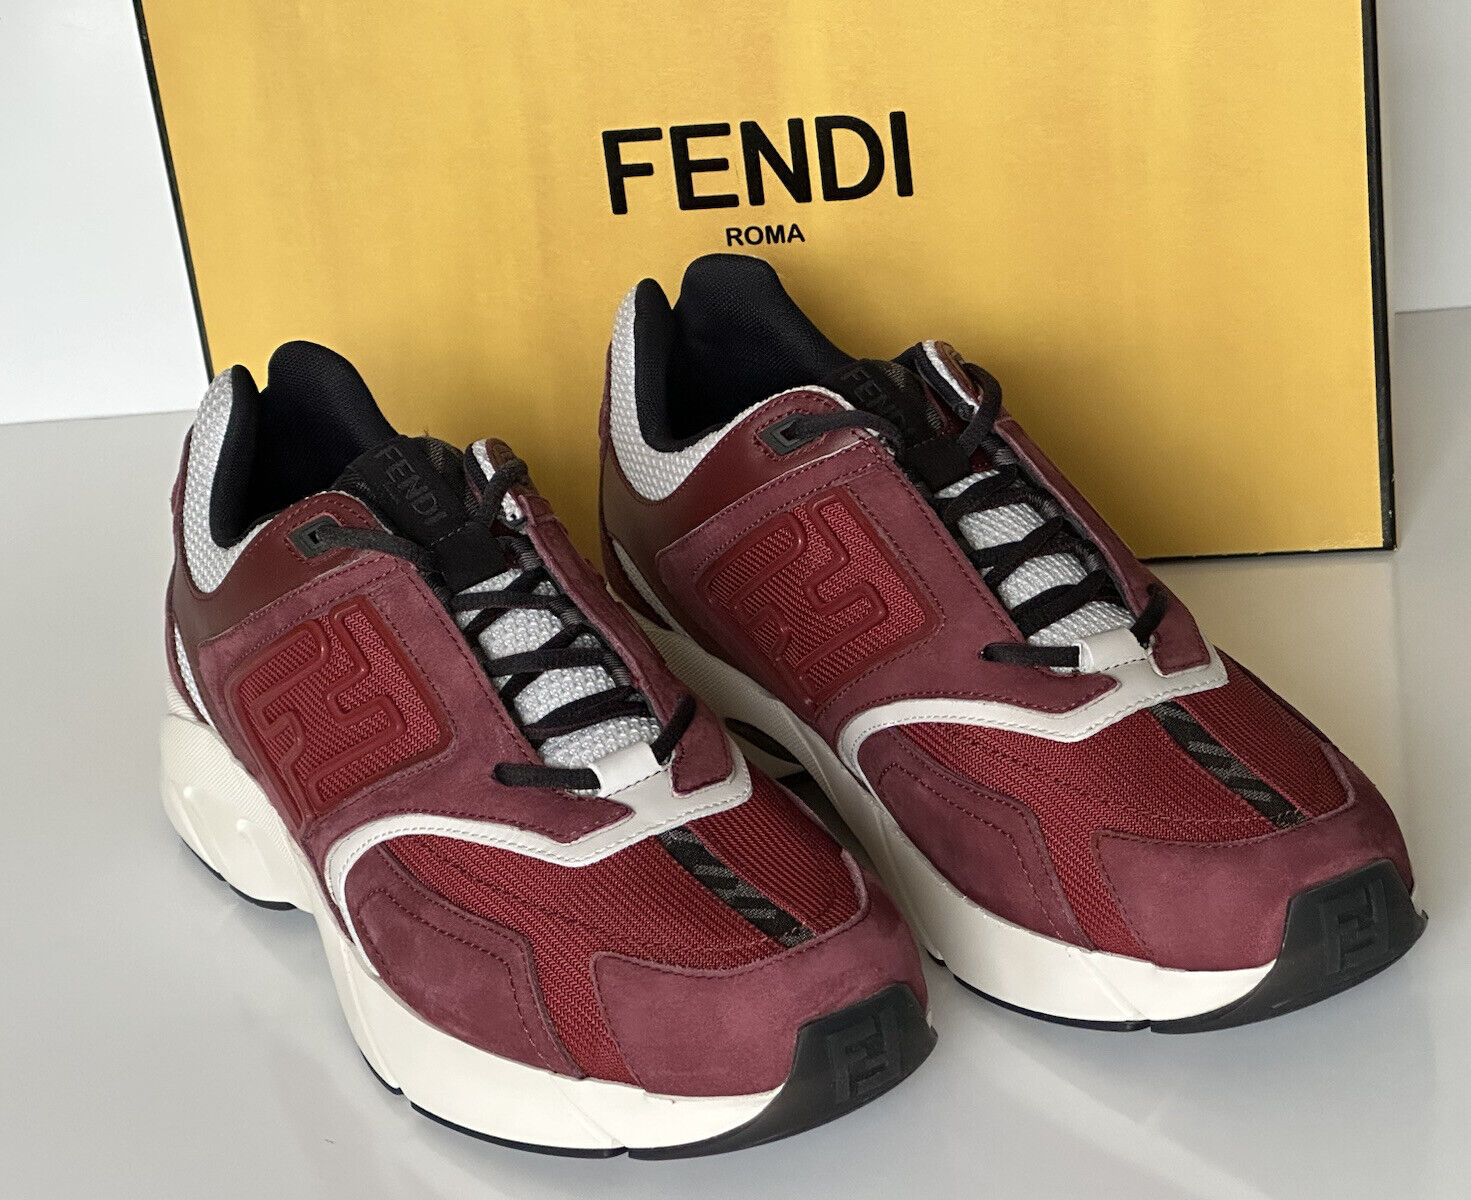 NIB 1100 долларов США Бордовые кроссовки Fendi FF Logo из ткани/кожи 10 США (43 евро) 7E1555